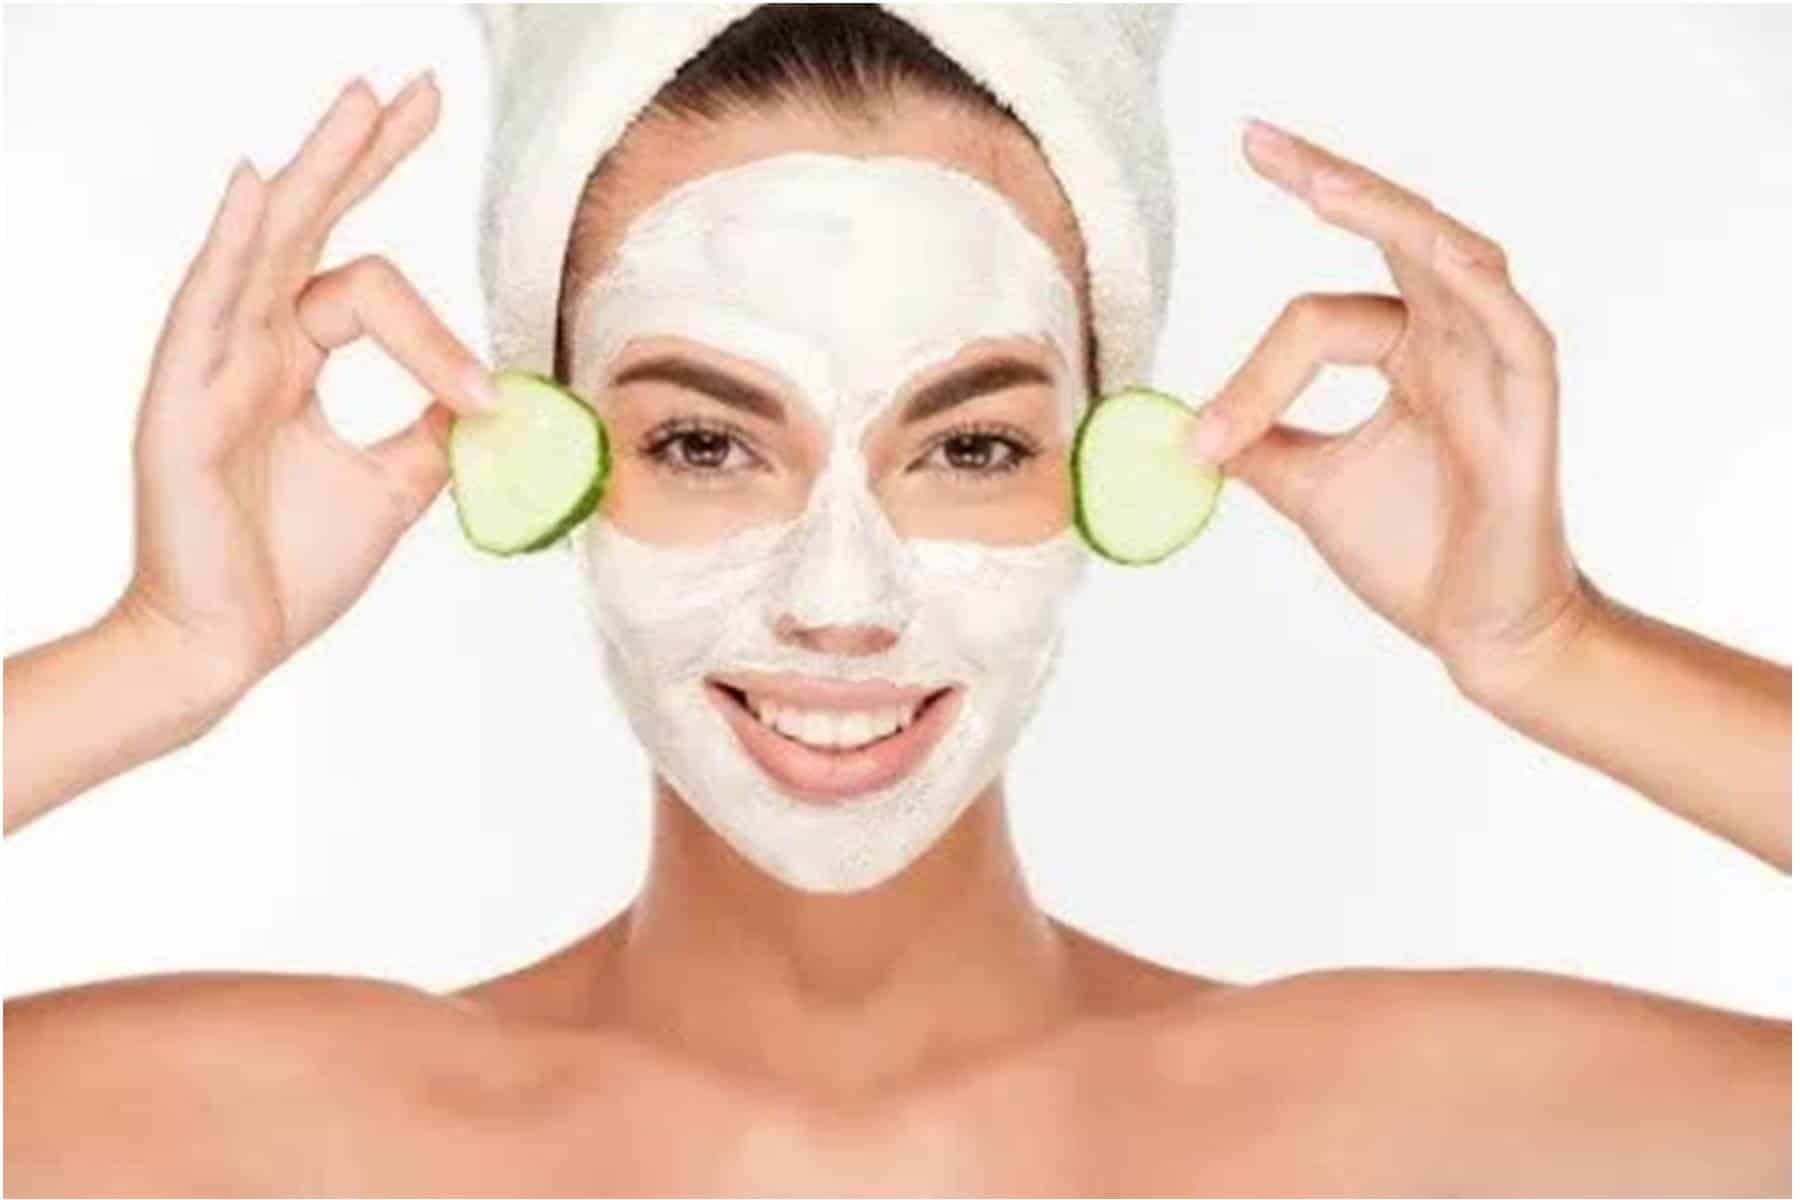 Máscaras caseiras de pepino para ajudar a limpar e suavizar a pele